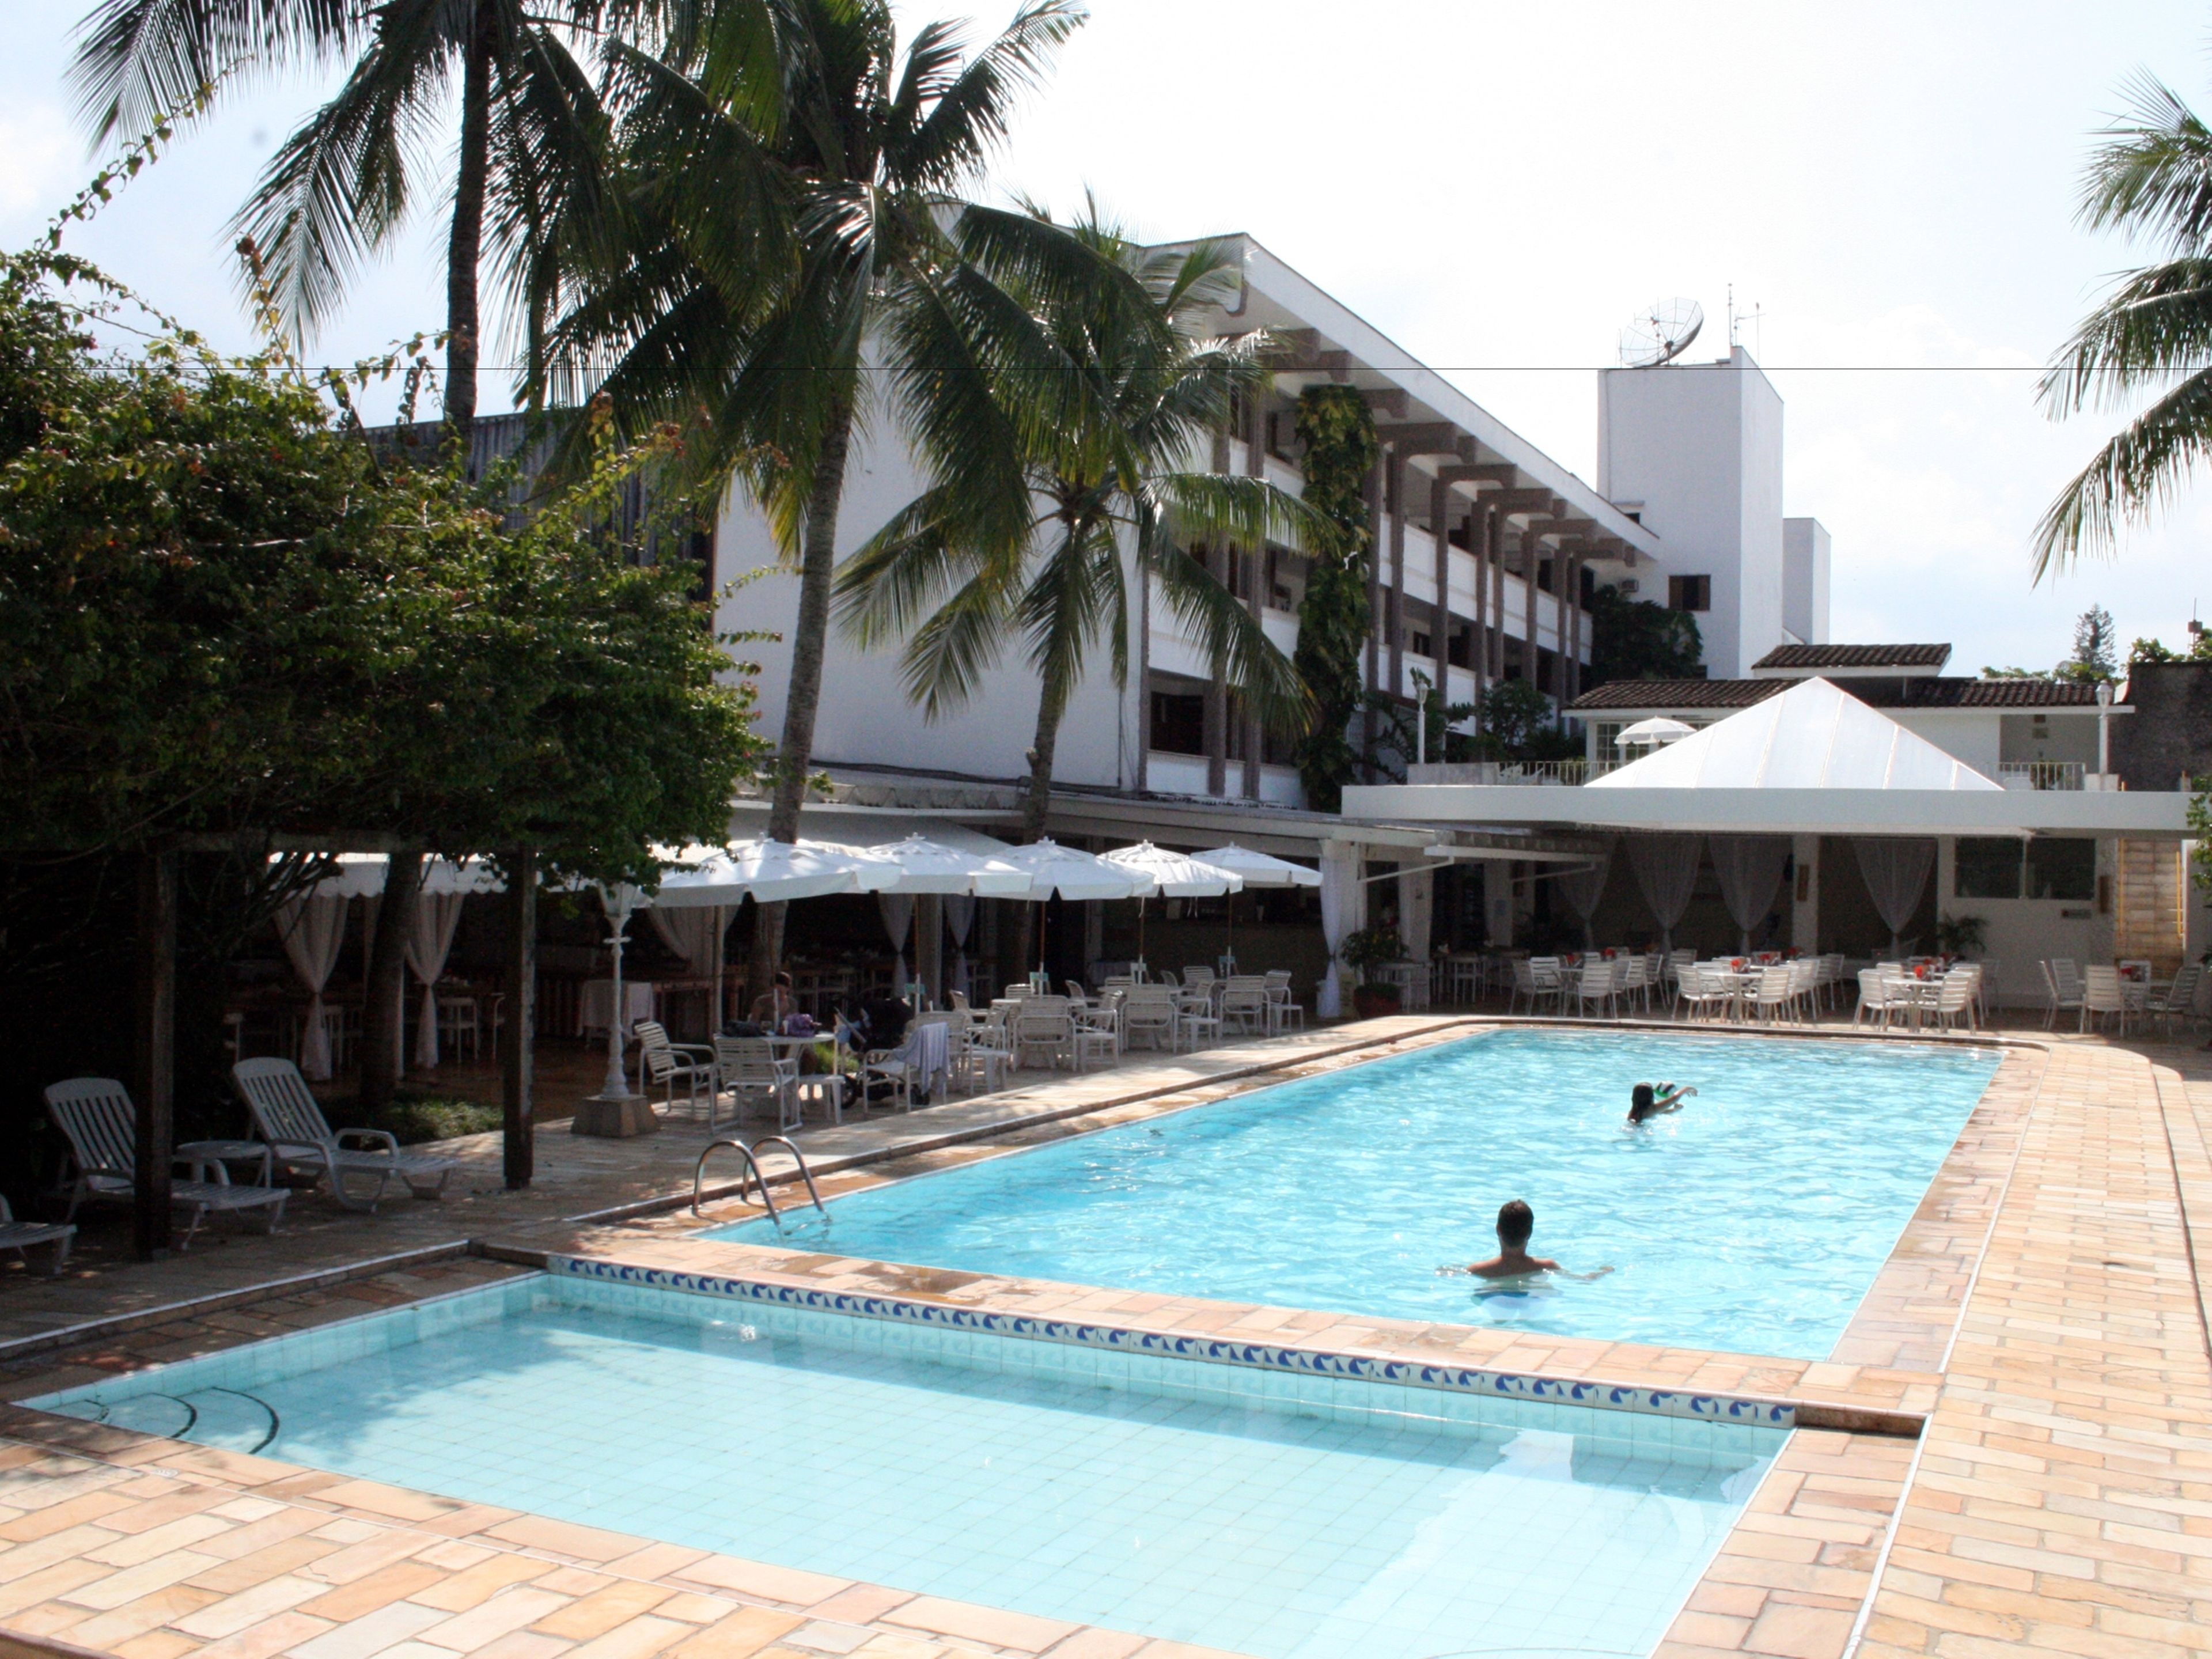 Ubatuba Palace Hotel image 1